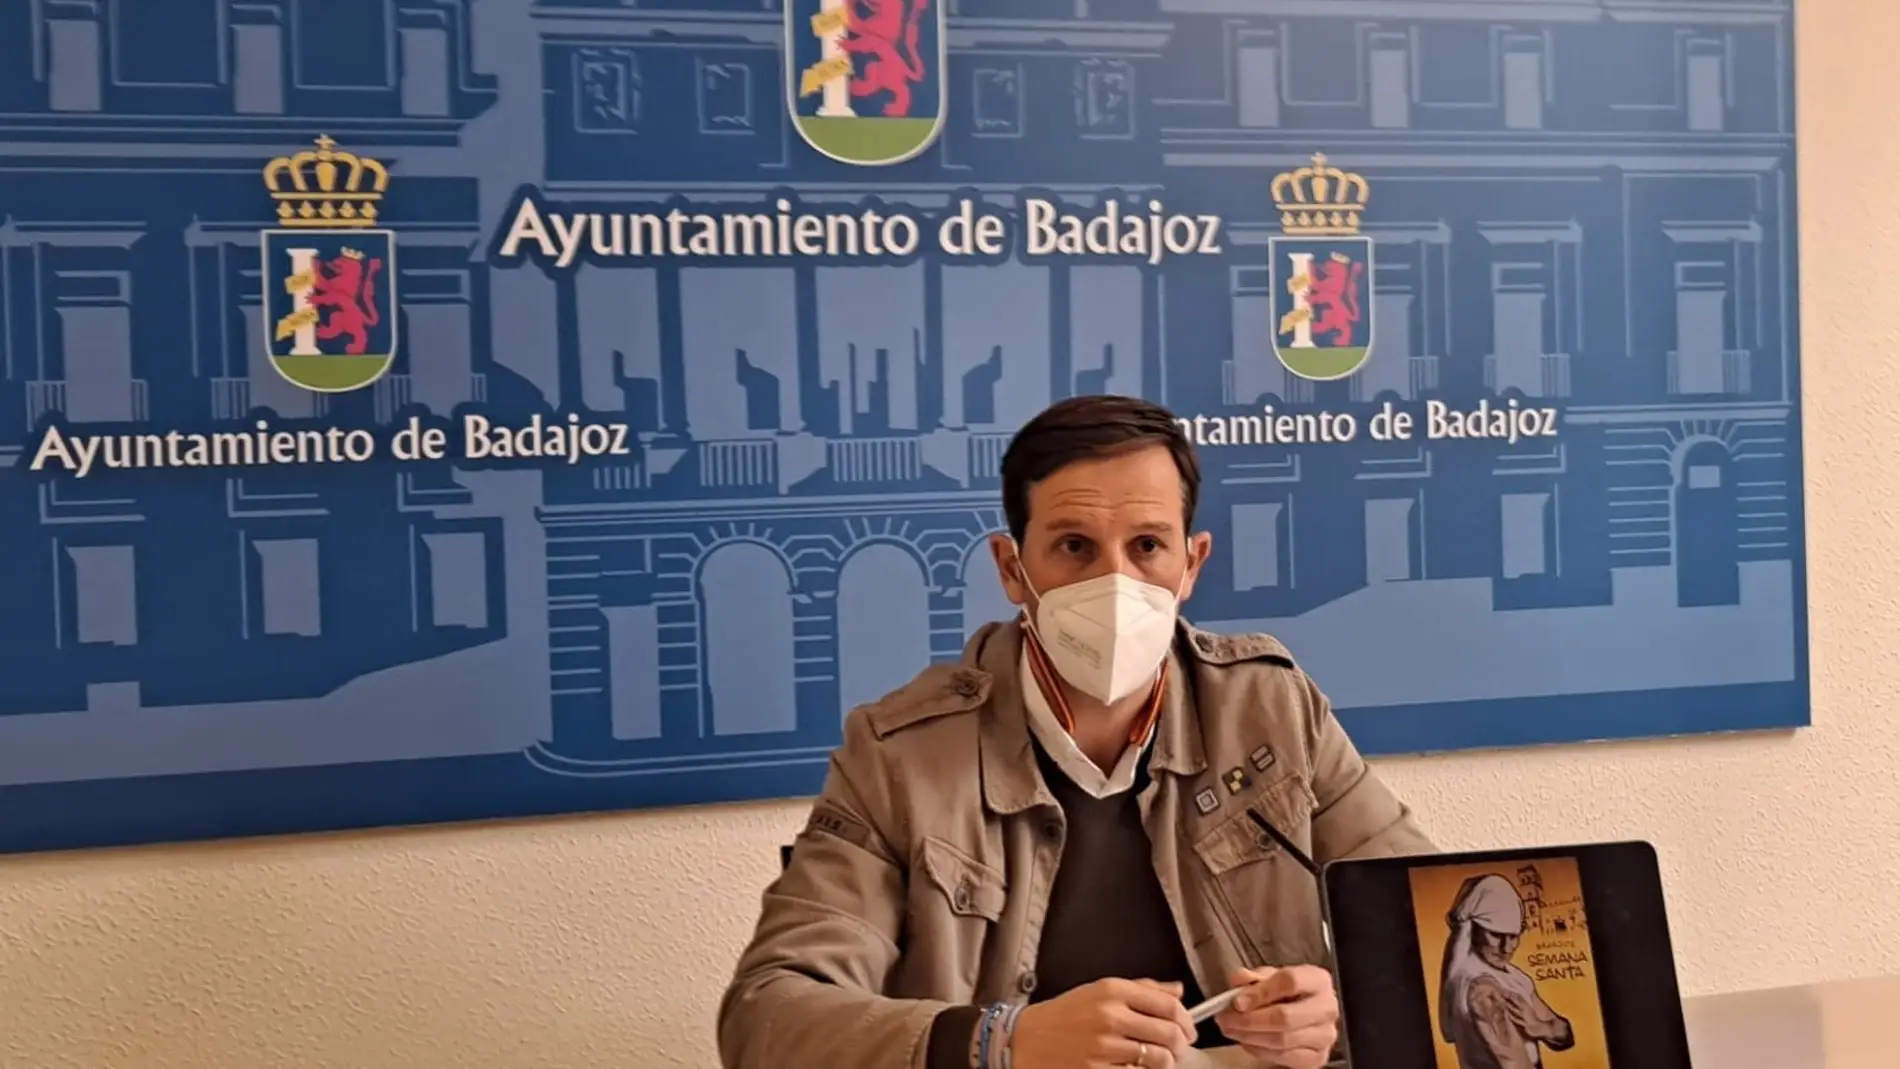 El dispositivo de seguridad durante la Semana Santa de Badajoz constará de 1.200 servicios, 630 de policía local 